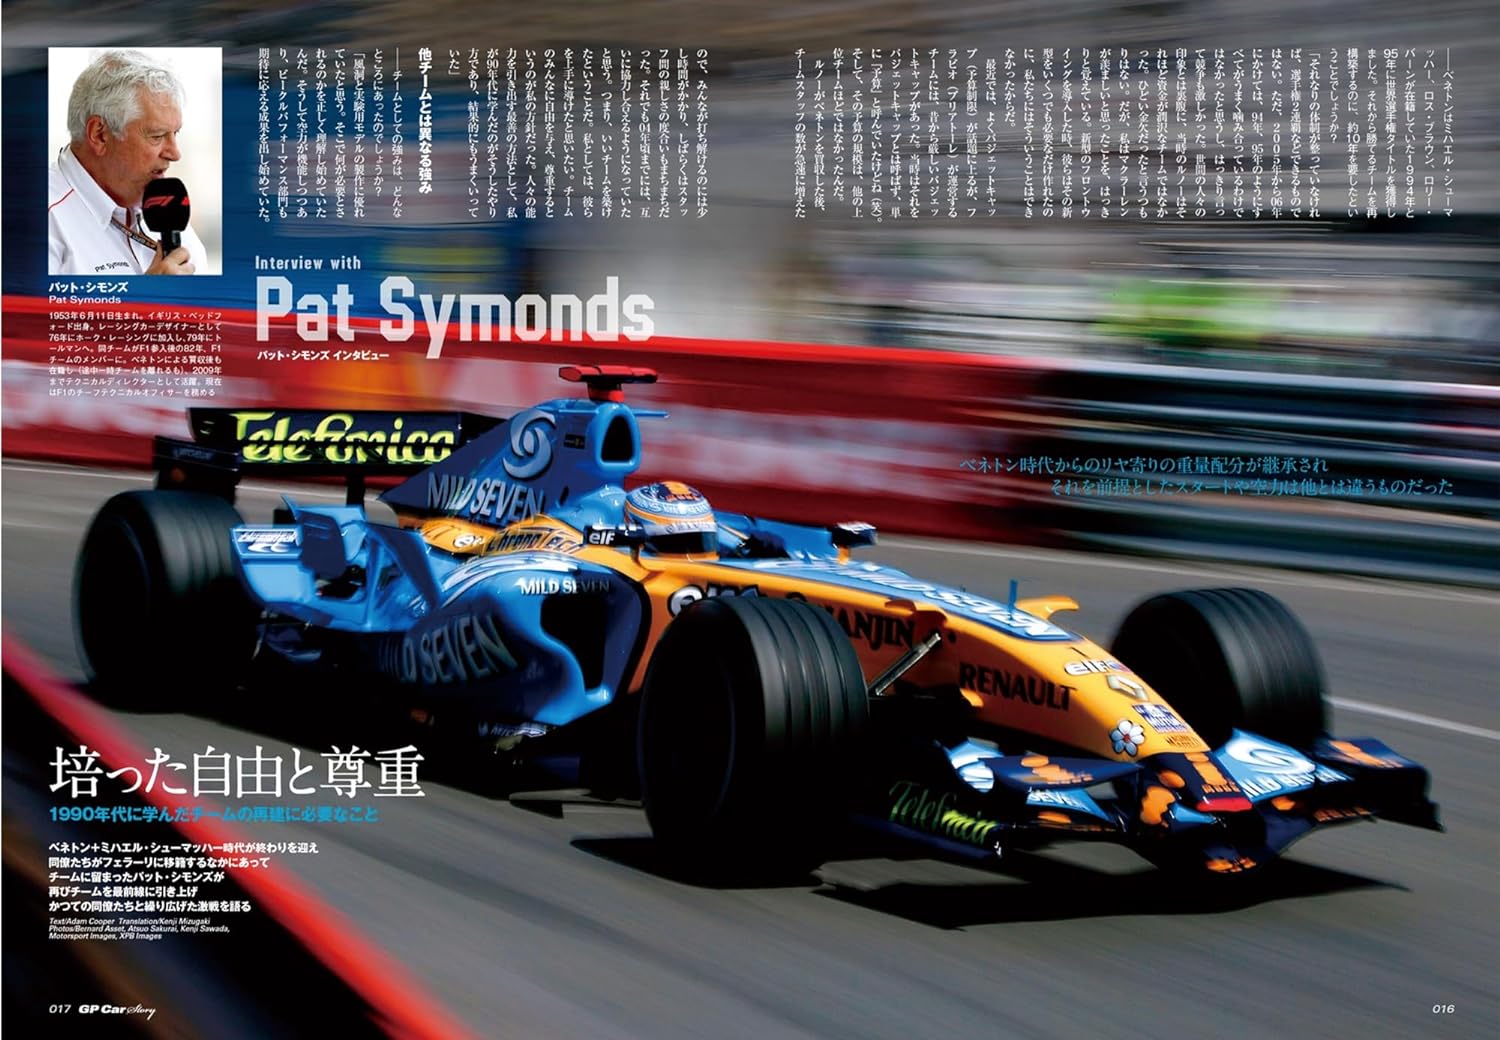 GP CAR STORY Vol. 46 Renault R26 – MOYASHI JAPAN BOOKS